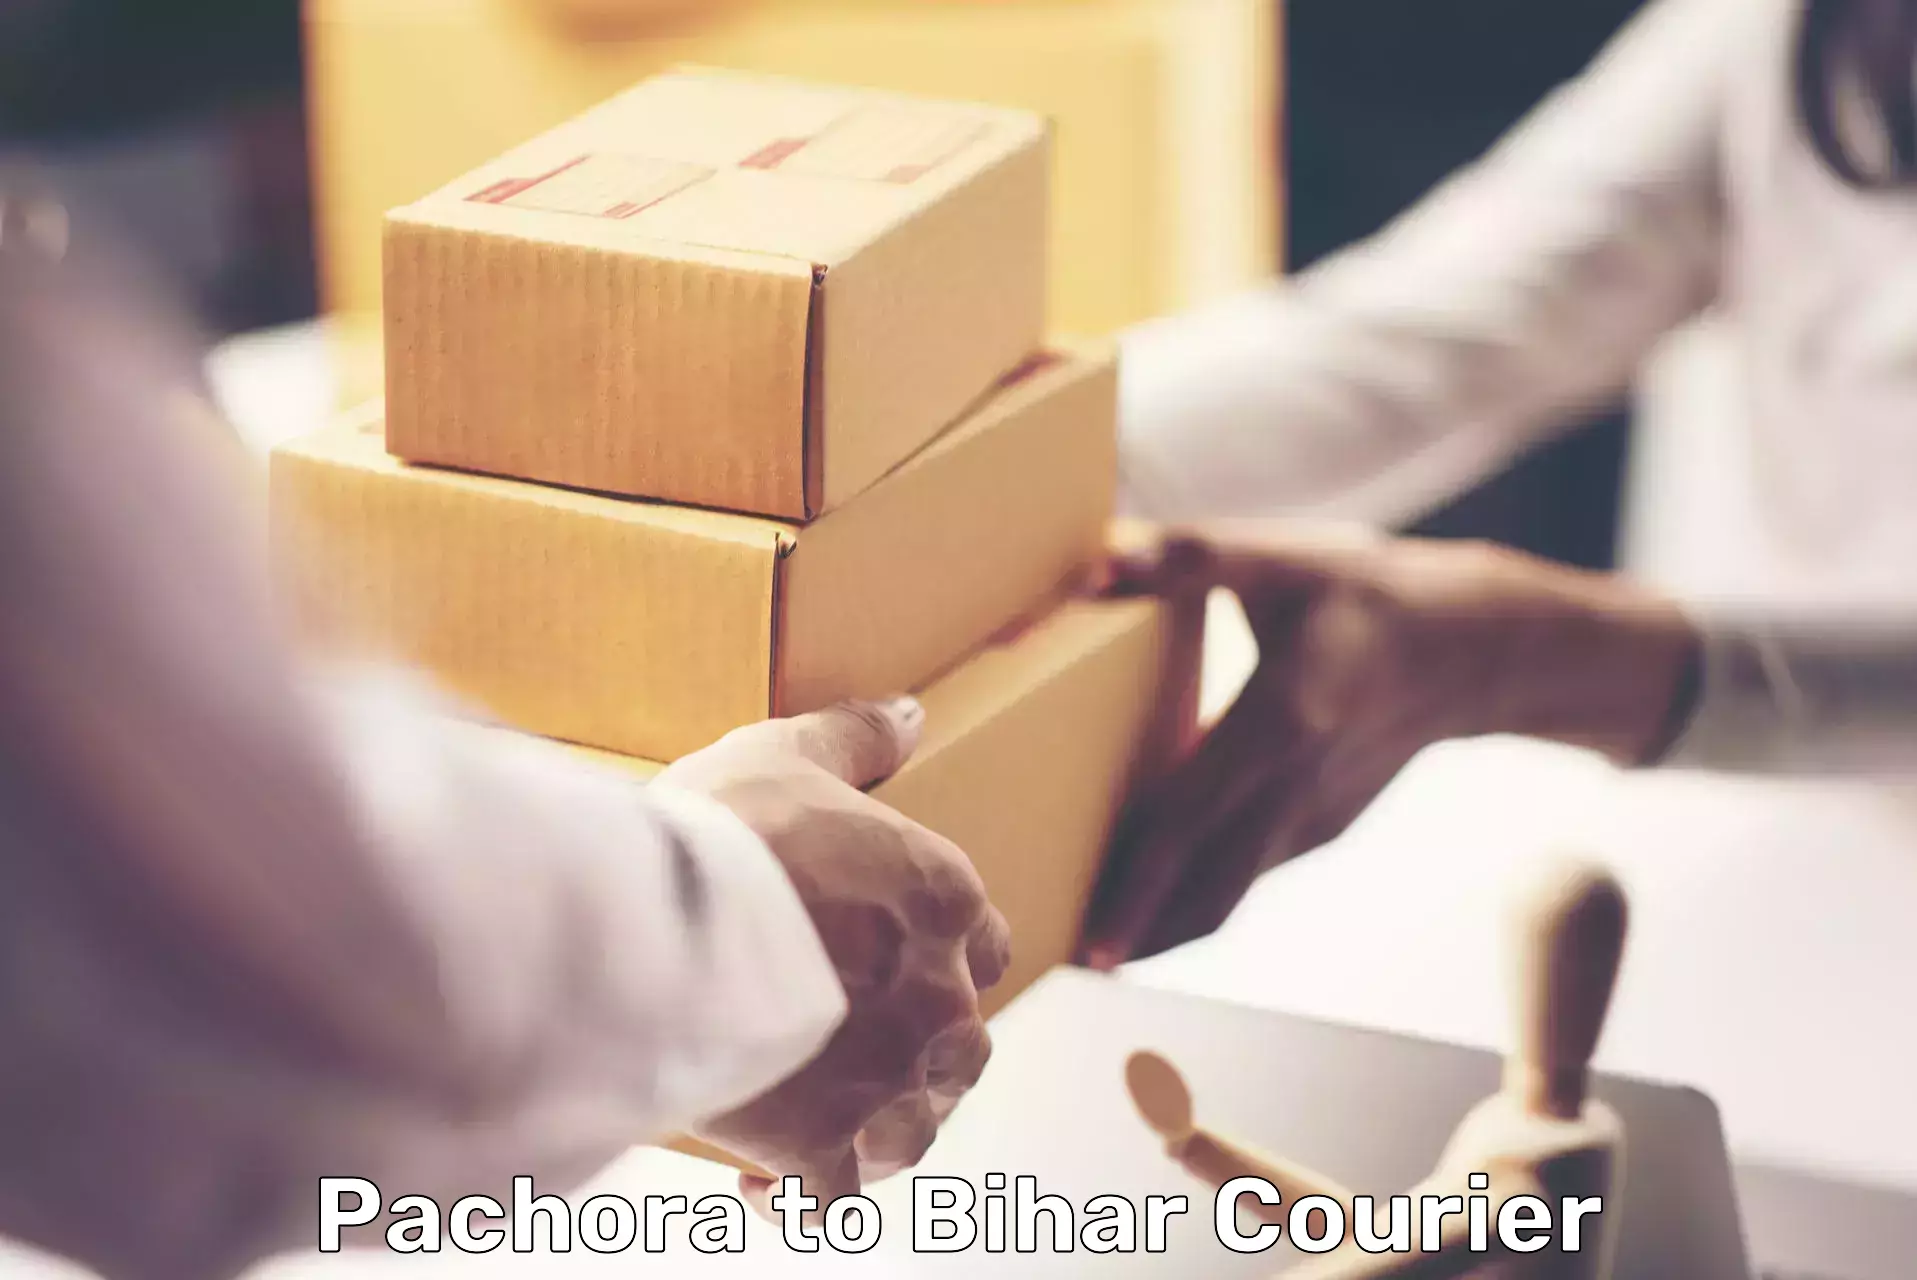 Efficient parcel service Pachora to Kaluahi